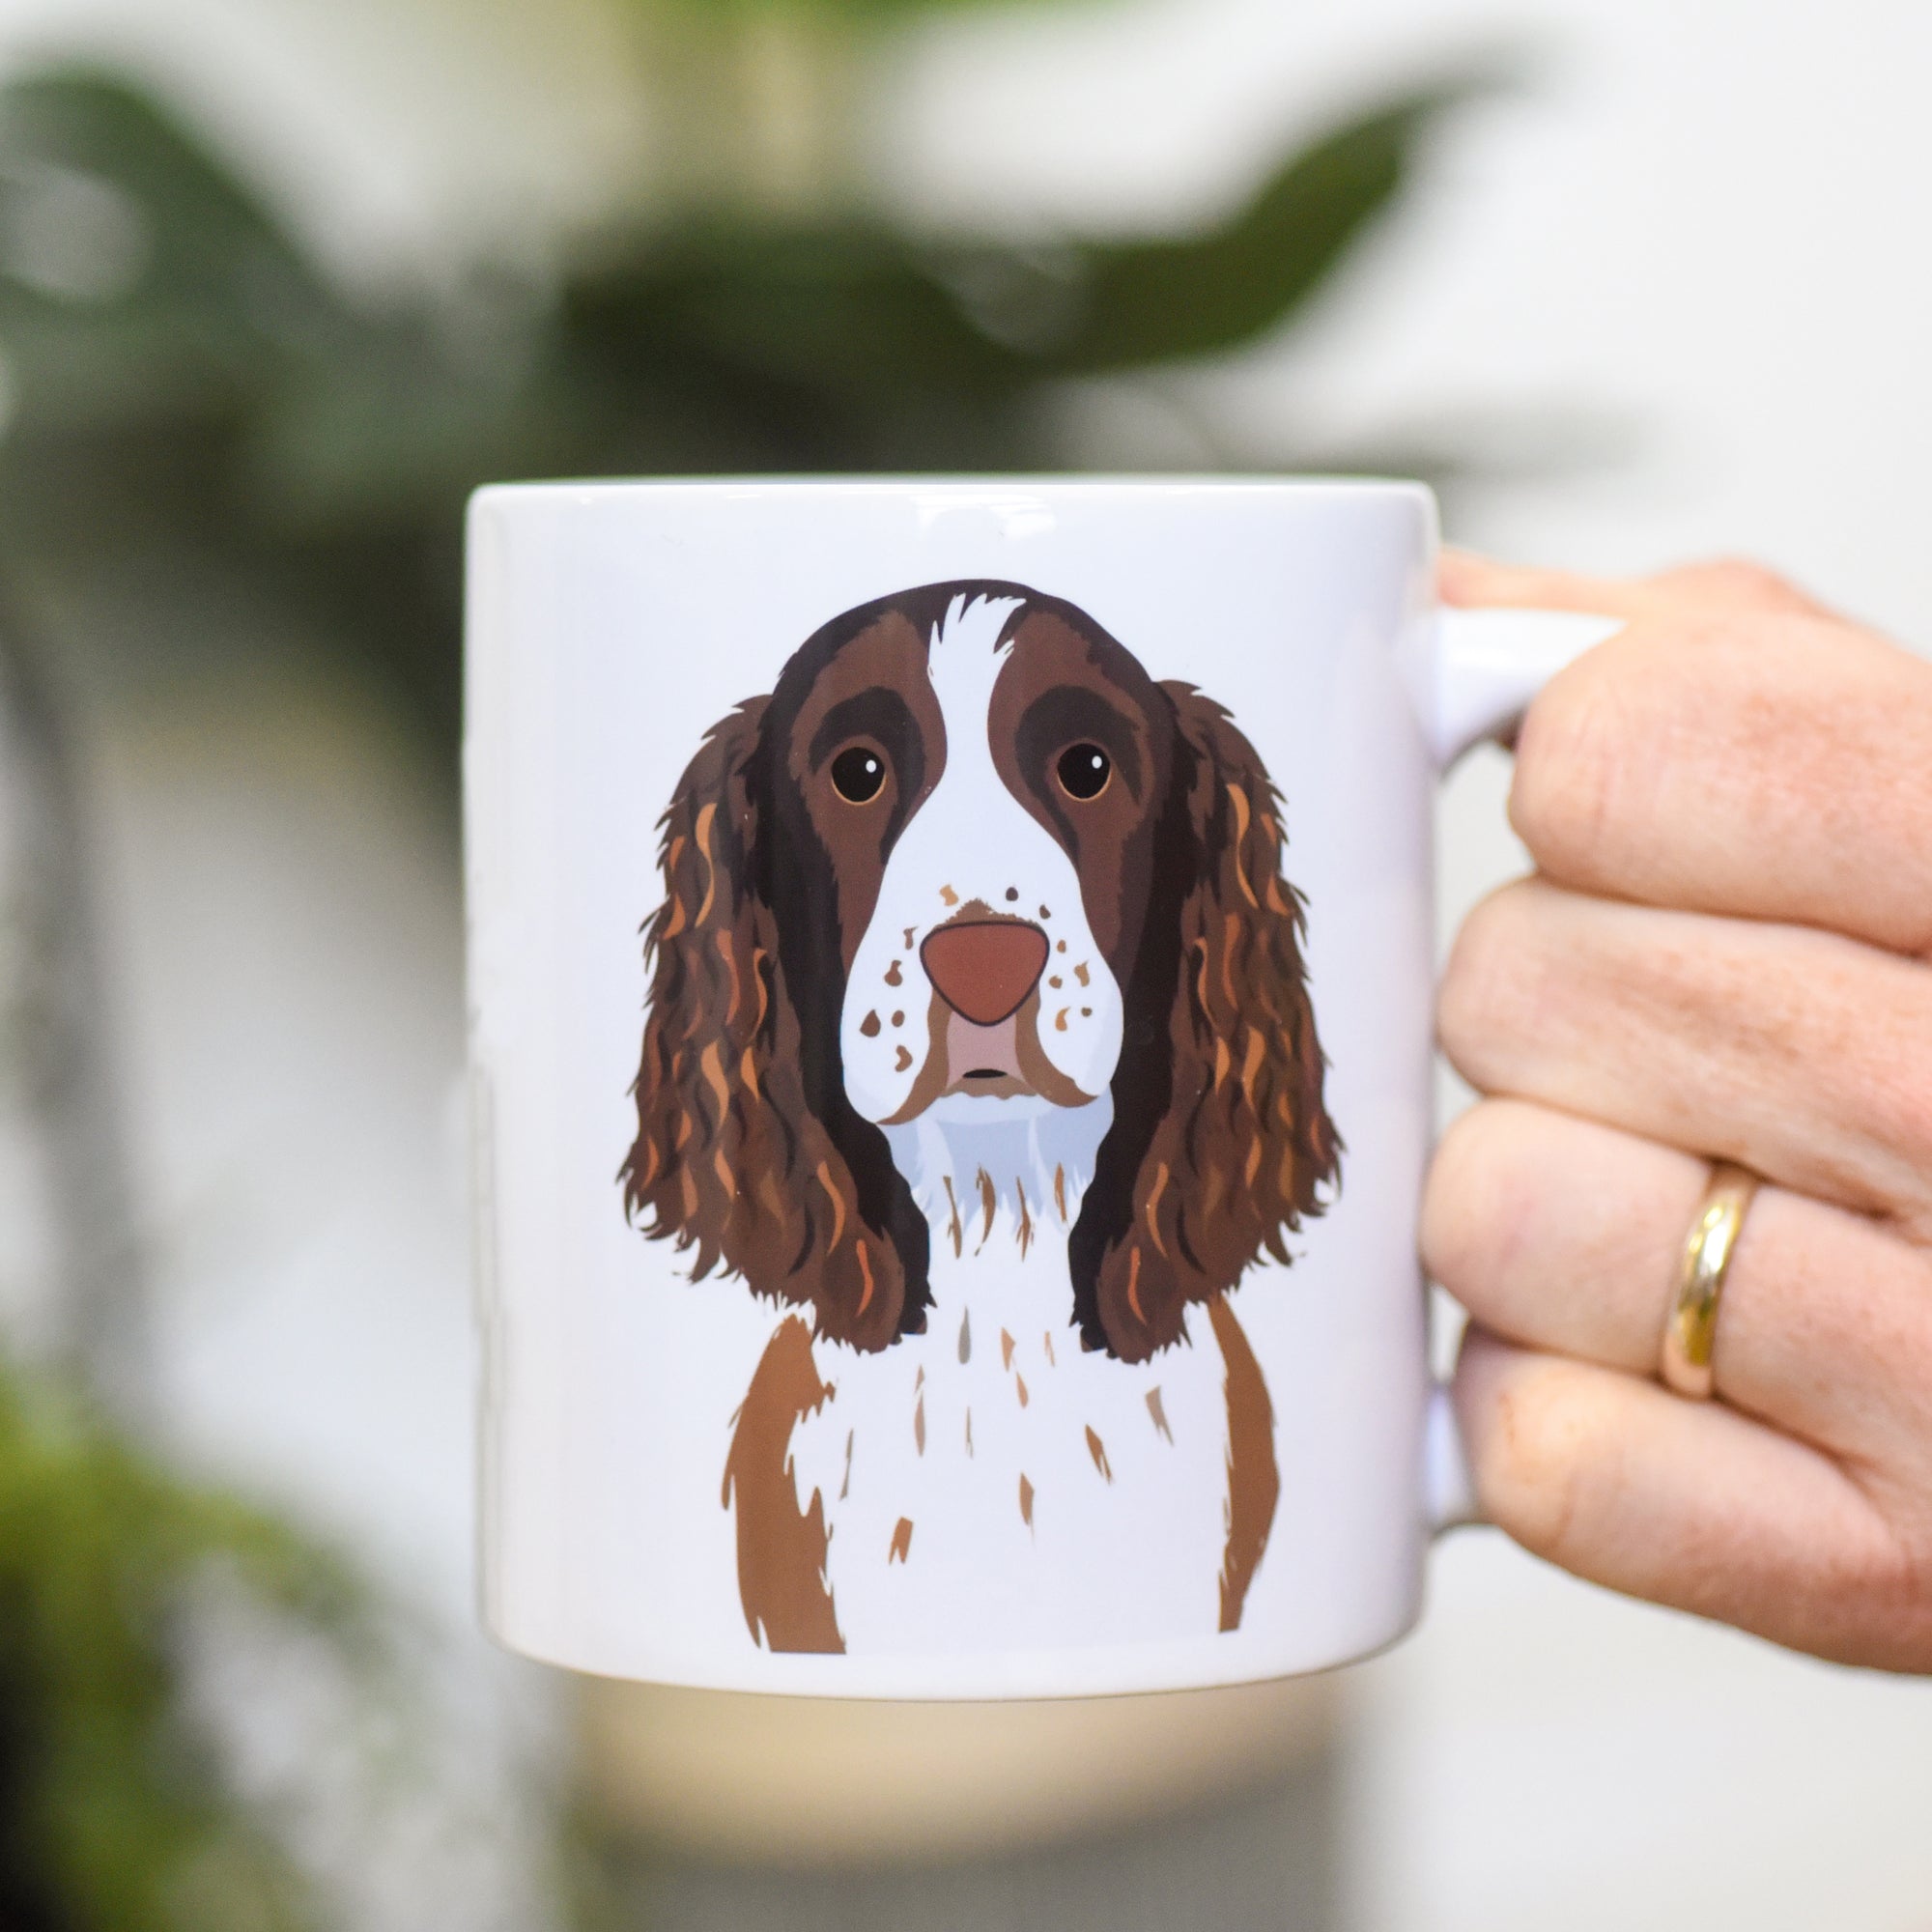 I work hard for my dog - Illustrated Mug